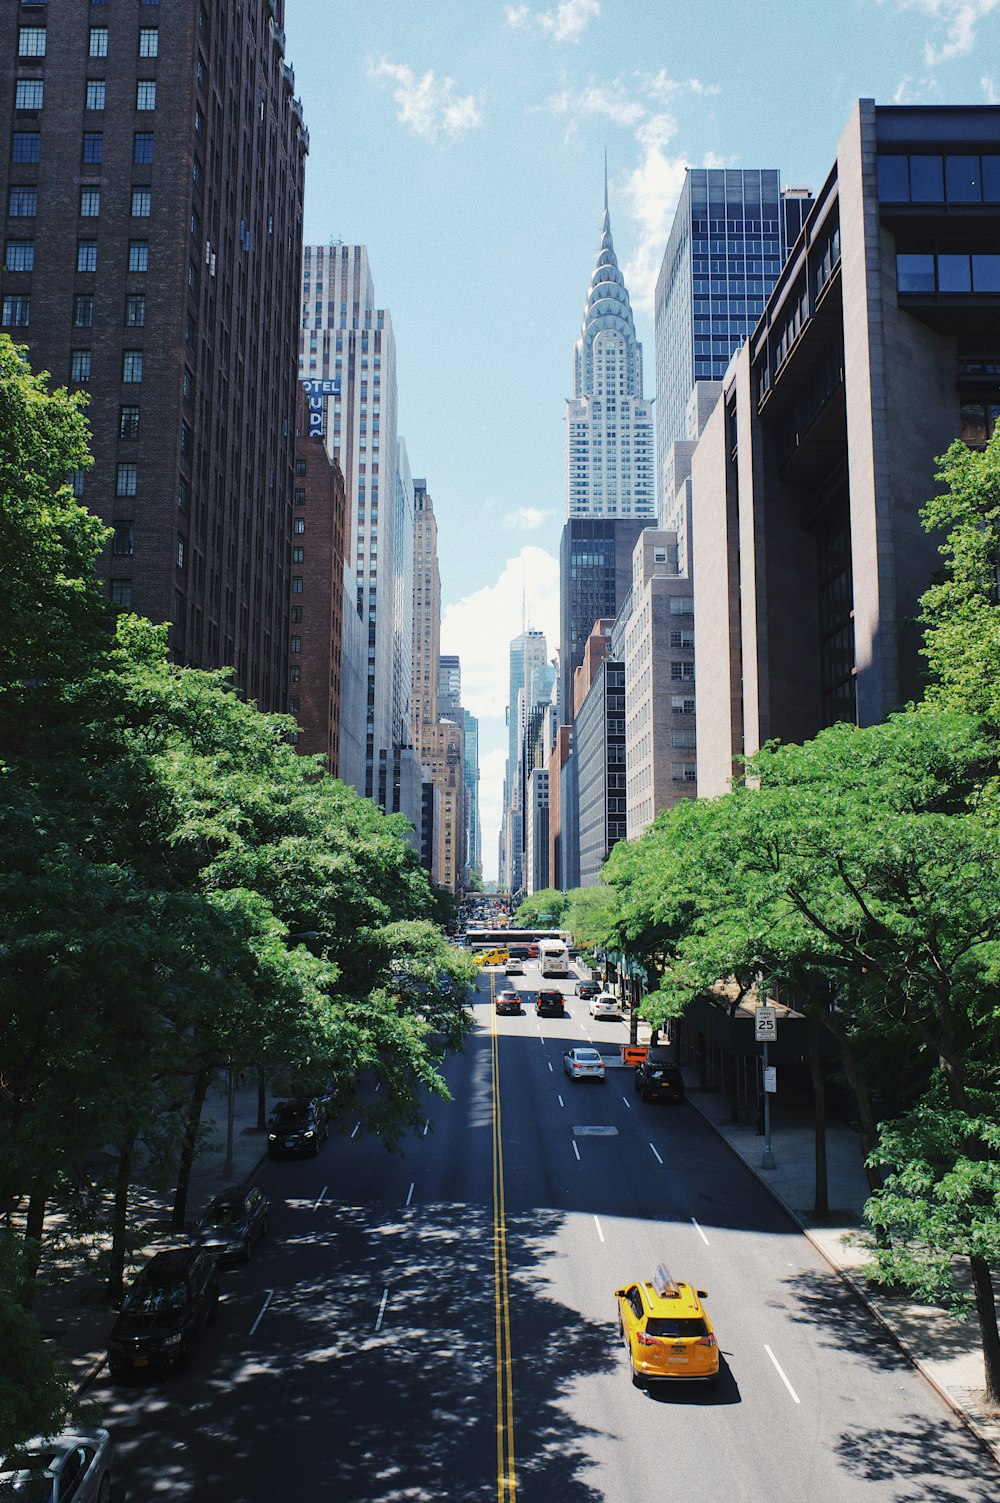 Hình nền New York: Muốn chuyển tới thành phố đã đánh đổi giấc mơ của bao người? Hình nền New York là sự lựa chọn hoàn hảo cho bạn! Bức ảnh sẽ mang đến cho bạn một tầm nhìn như thật về toàn cảnh tuyệt đẹp của thành phố, đầy chất phóng khoáng và vô cùng sống động.